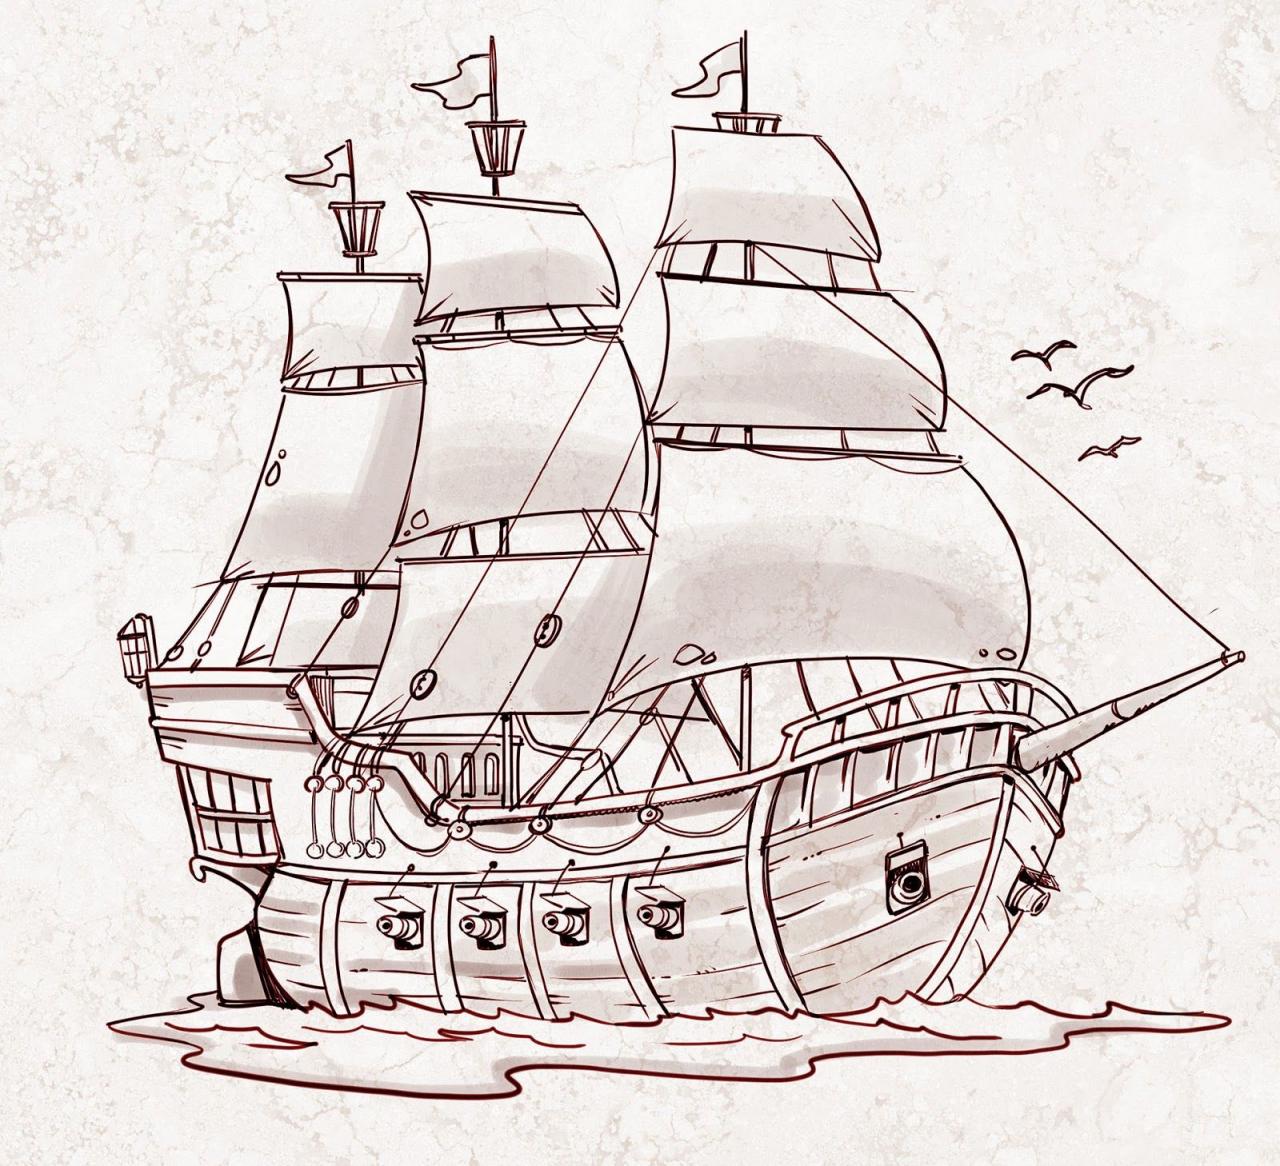 Blog del dibujante Jorge Santillan  Ilustraciones de cuentos  comics   libros educativos  revistas  etc -  …  Dibujo de barco  Dibujo barco pirata   Pinturas de barcos, dibujos de Un Barco Pirata, como dibujar Un Barco Pirata paso a paso